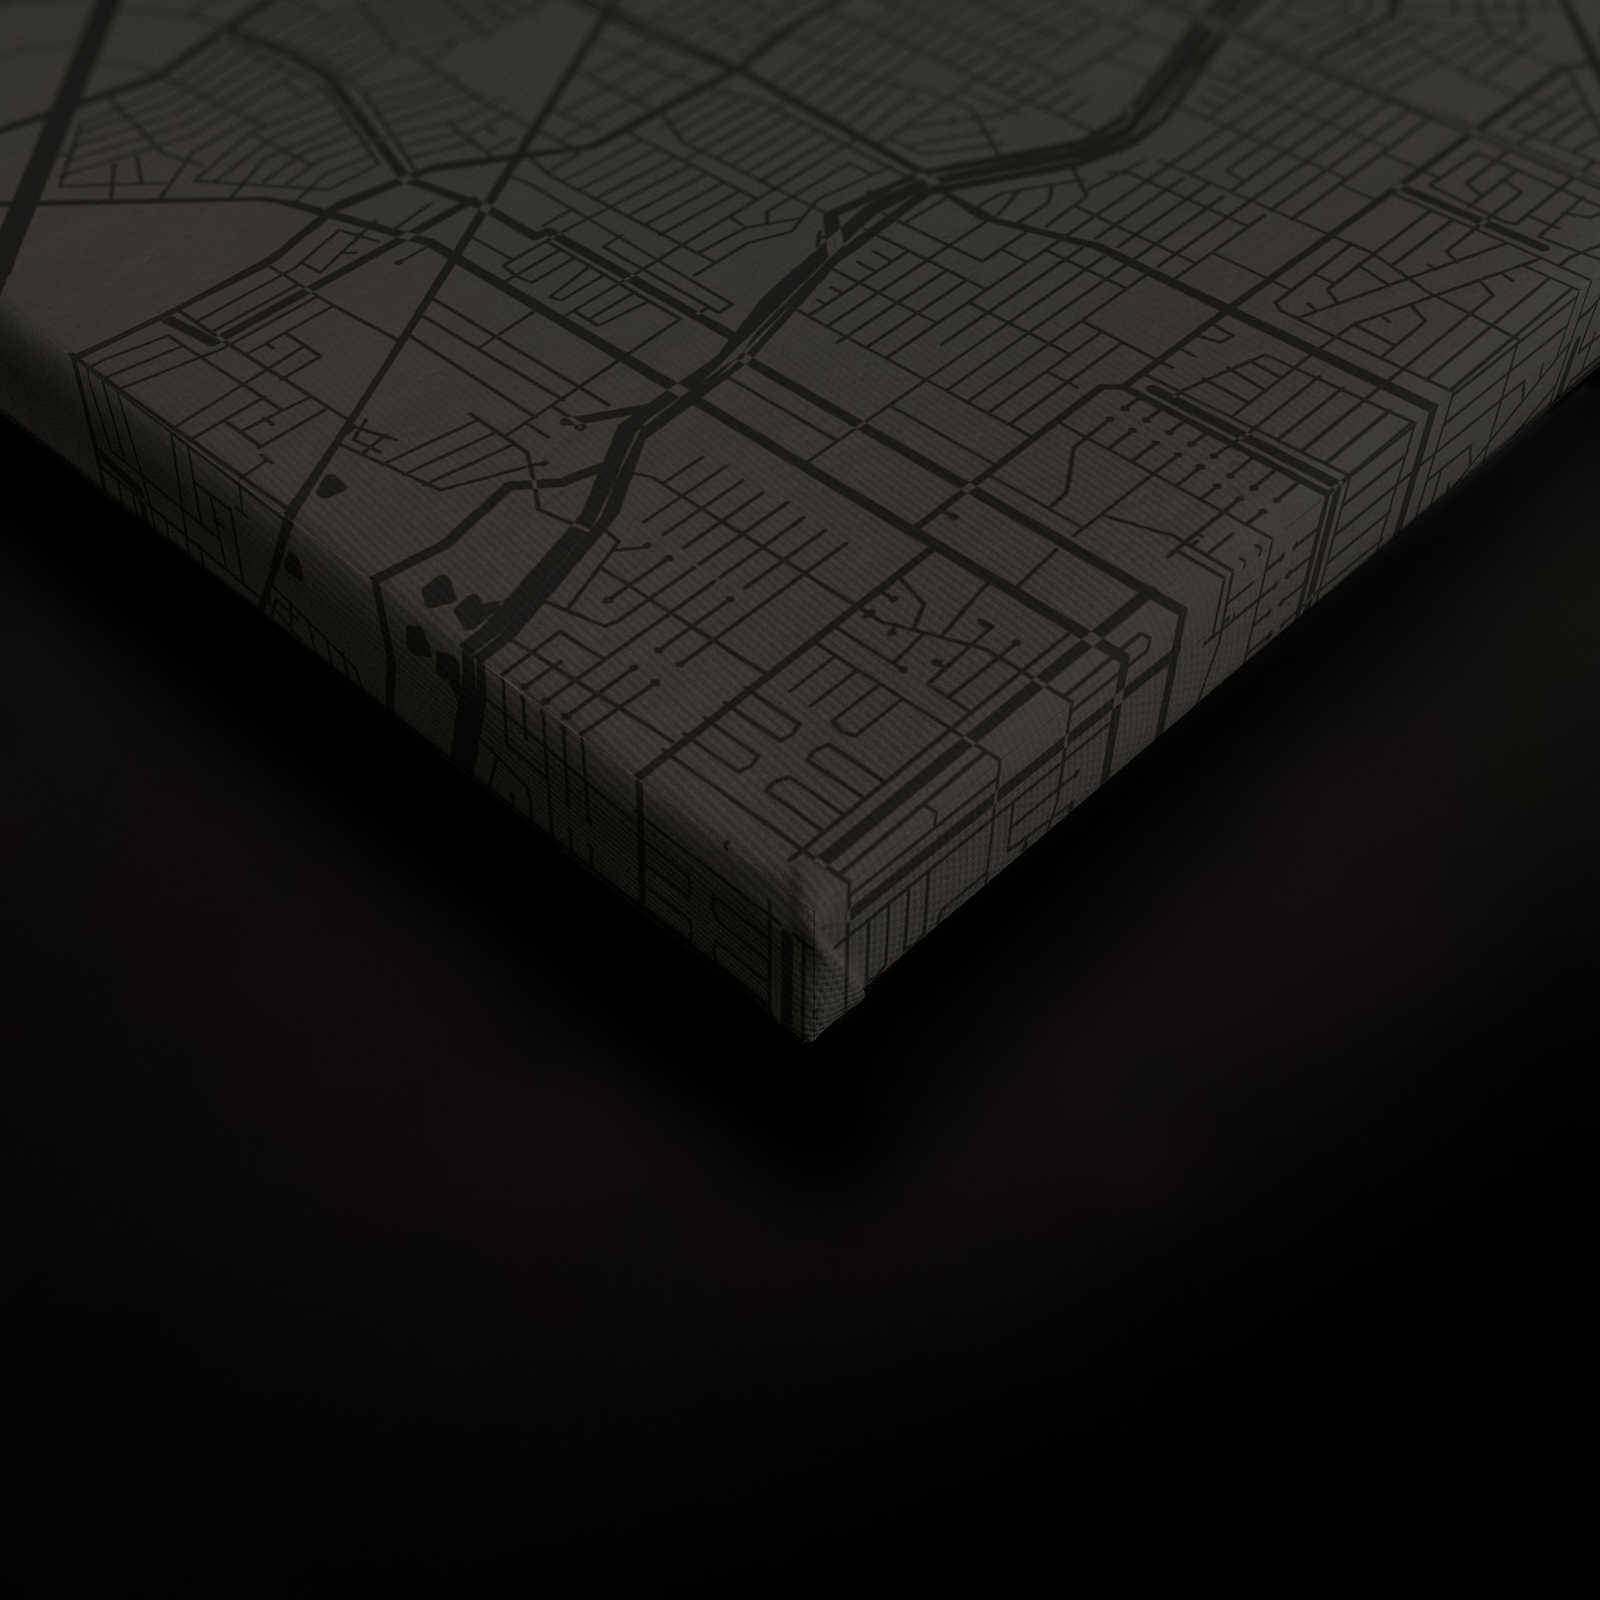             Canvas schilderij Stadsplattegrond met stratenplan | zwart - 0,90 m x 0,60 m
        